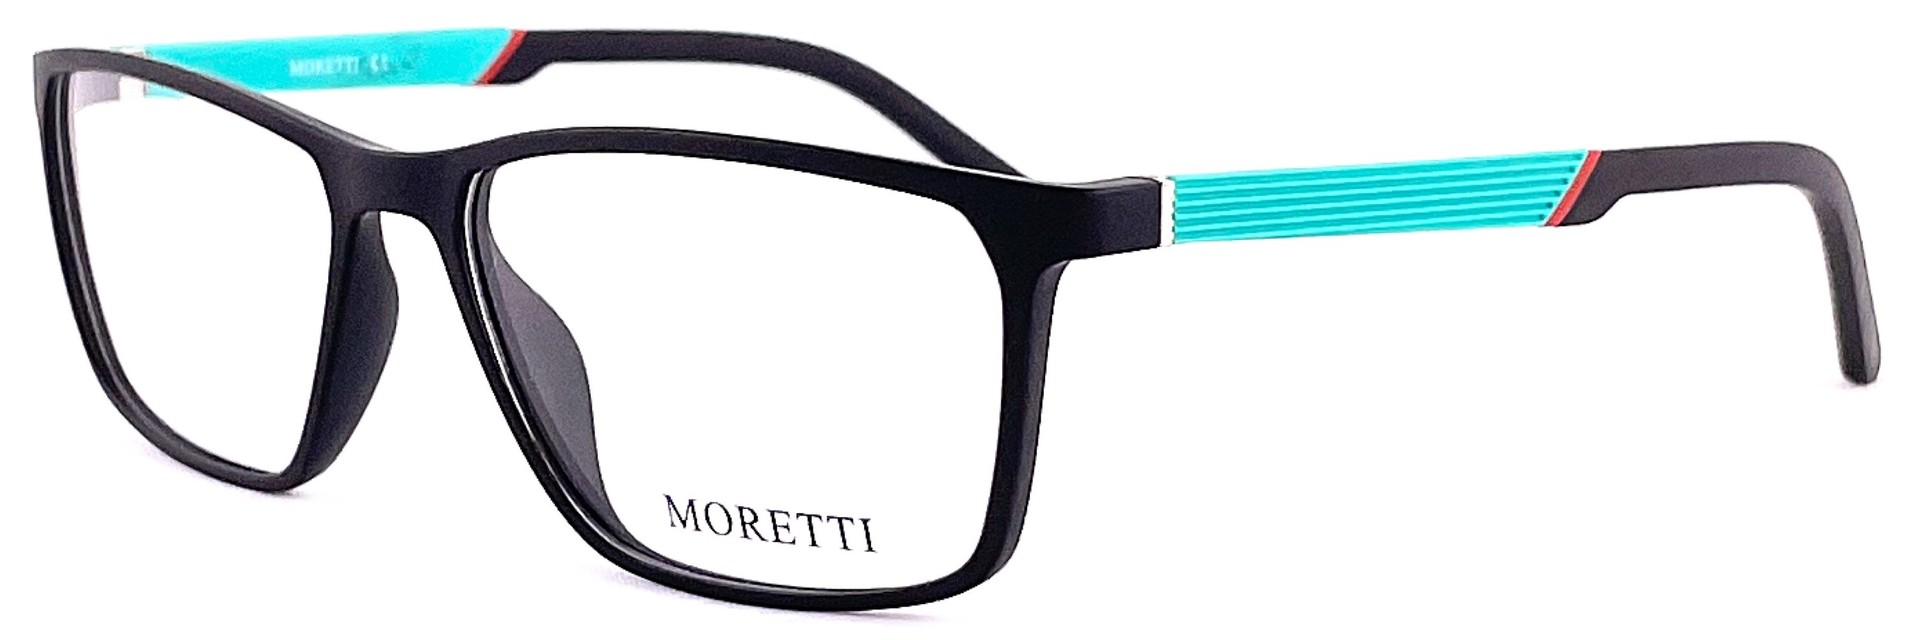 Moretti MZ01-02 C.01M 2